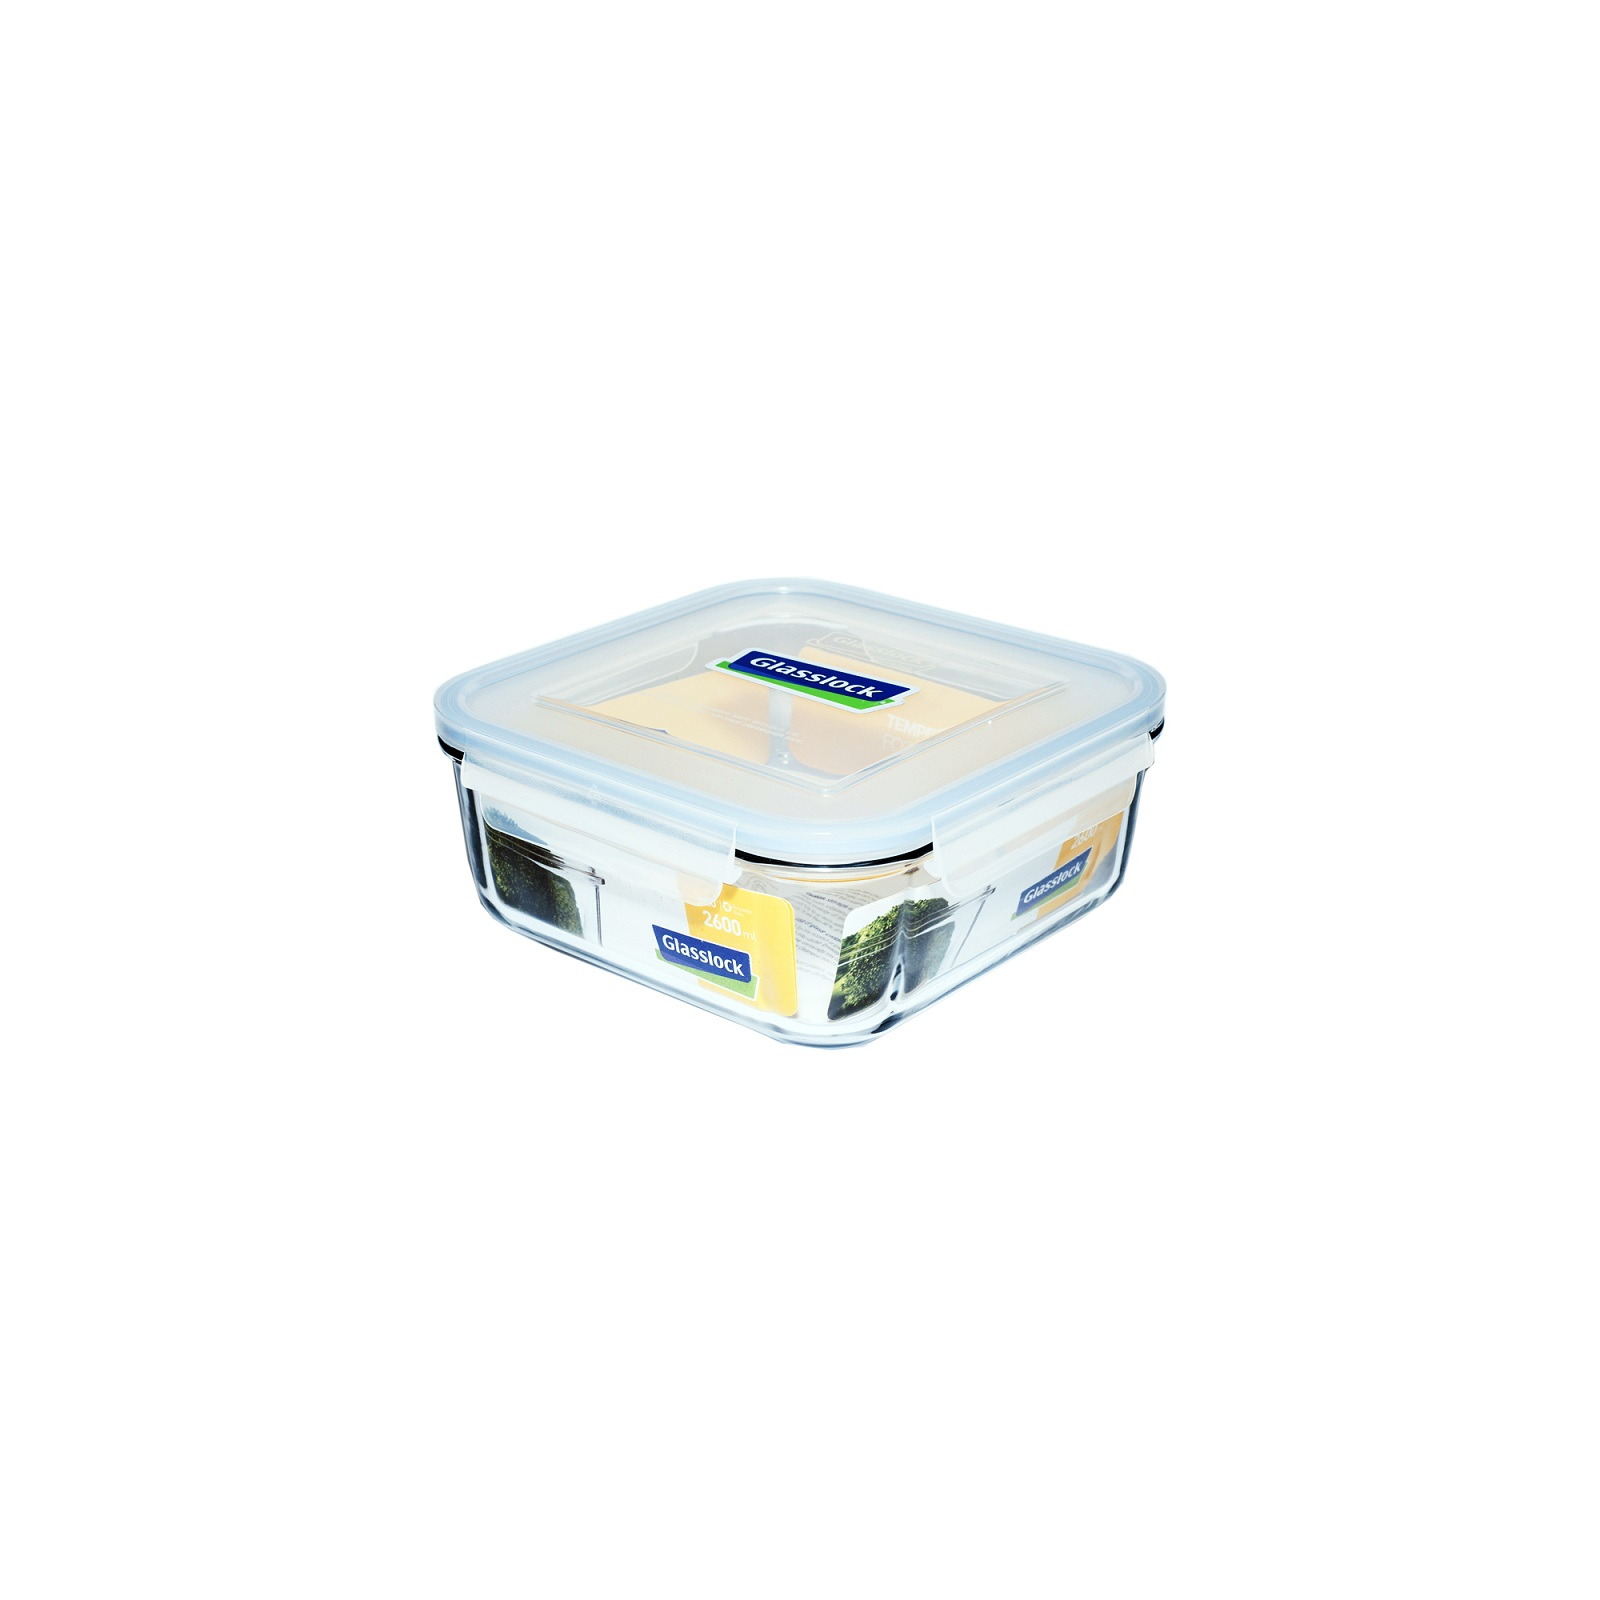 Харчовий контейнер Glasslock квадр. 2,6 л (MCSB-260)